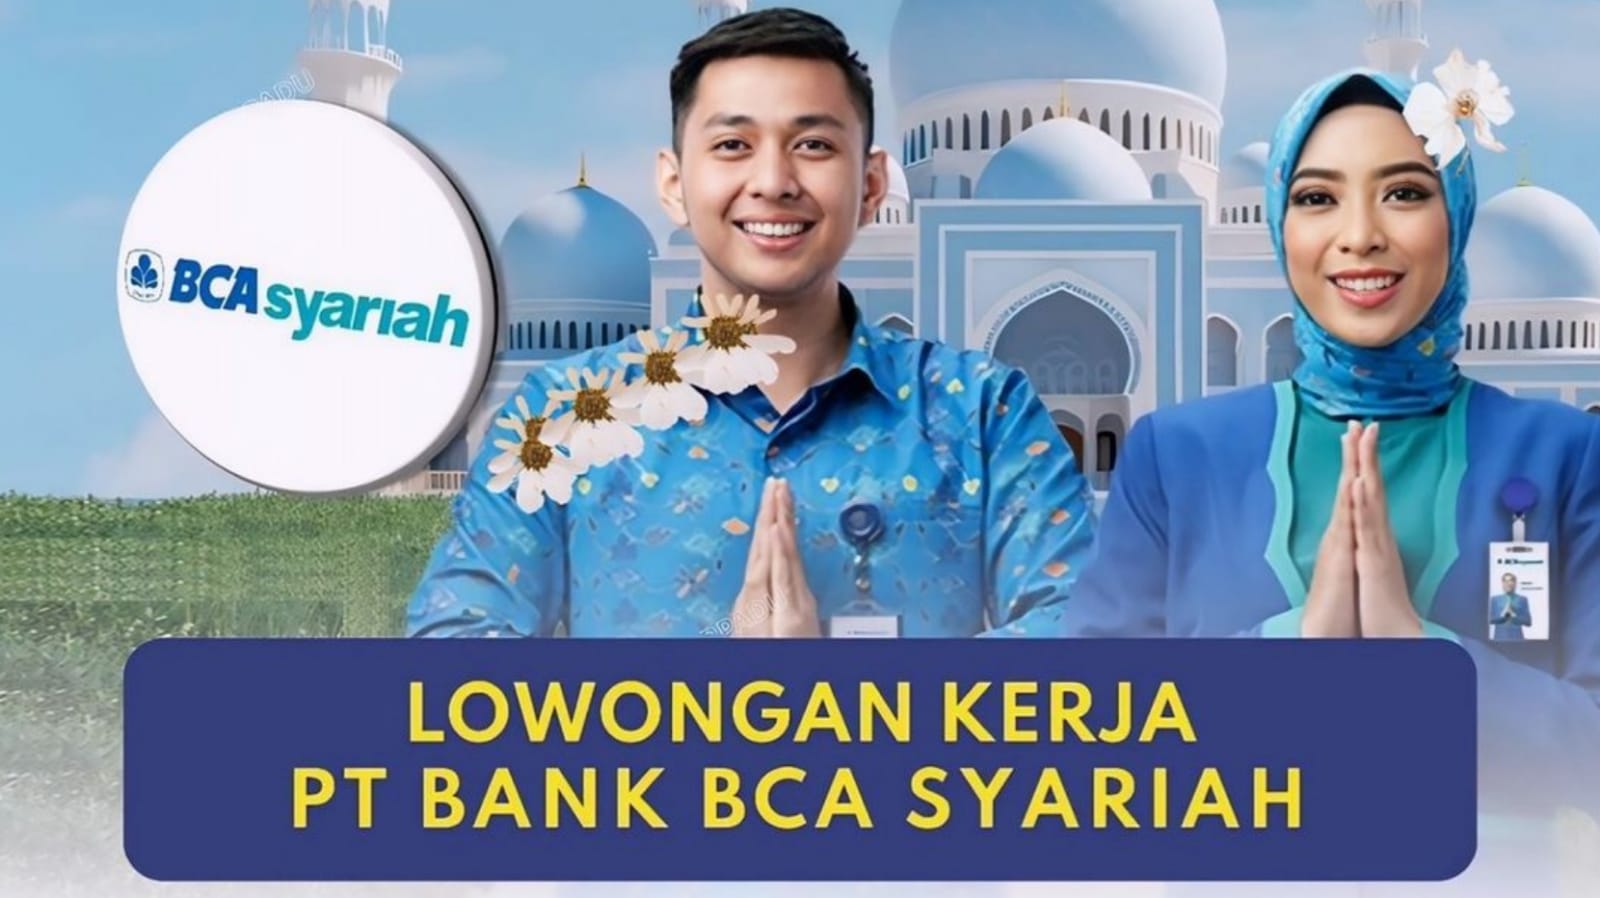 Lowongan Kerja Terbaru PT Bank BCA Syariah Penempatan di Palembang, Medan, Semarang, dan Yogyakarta